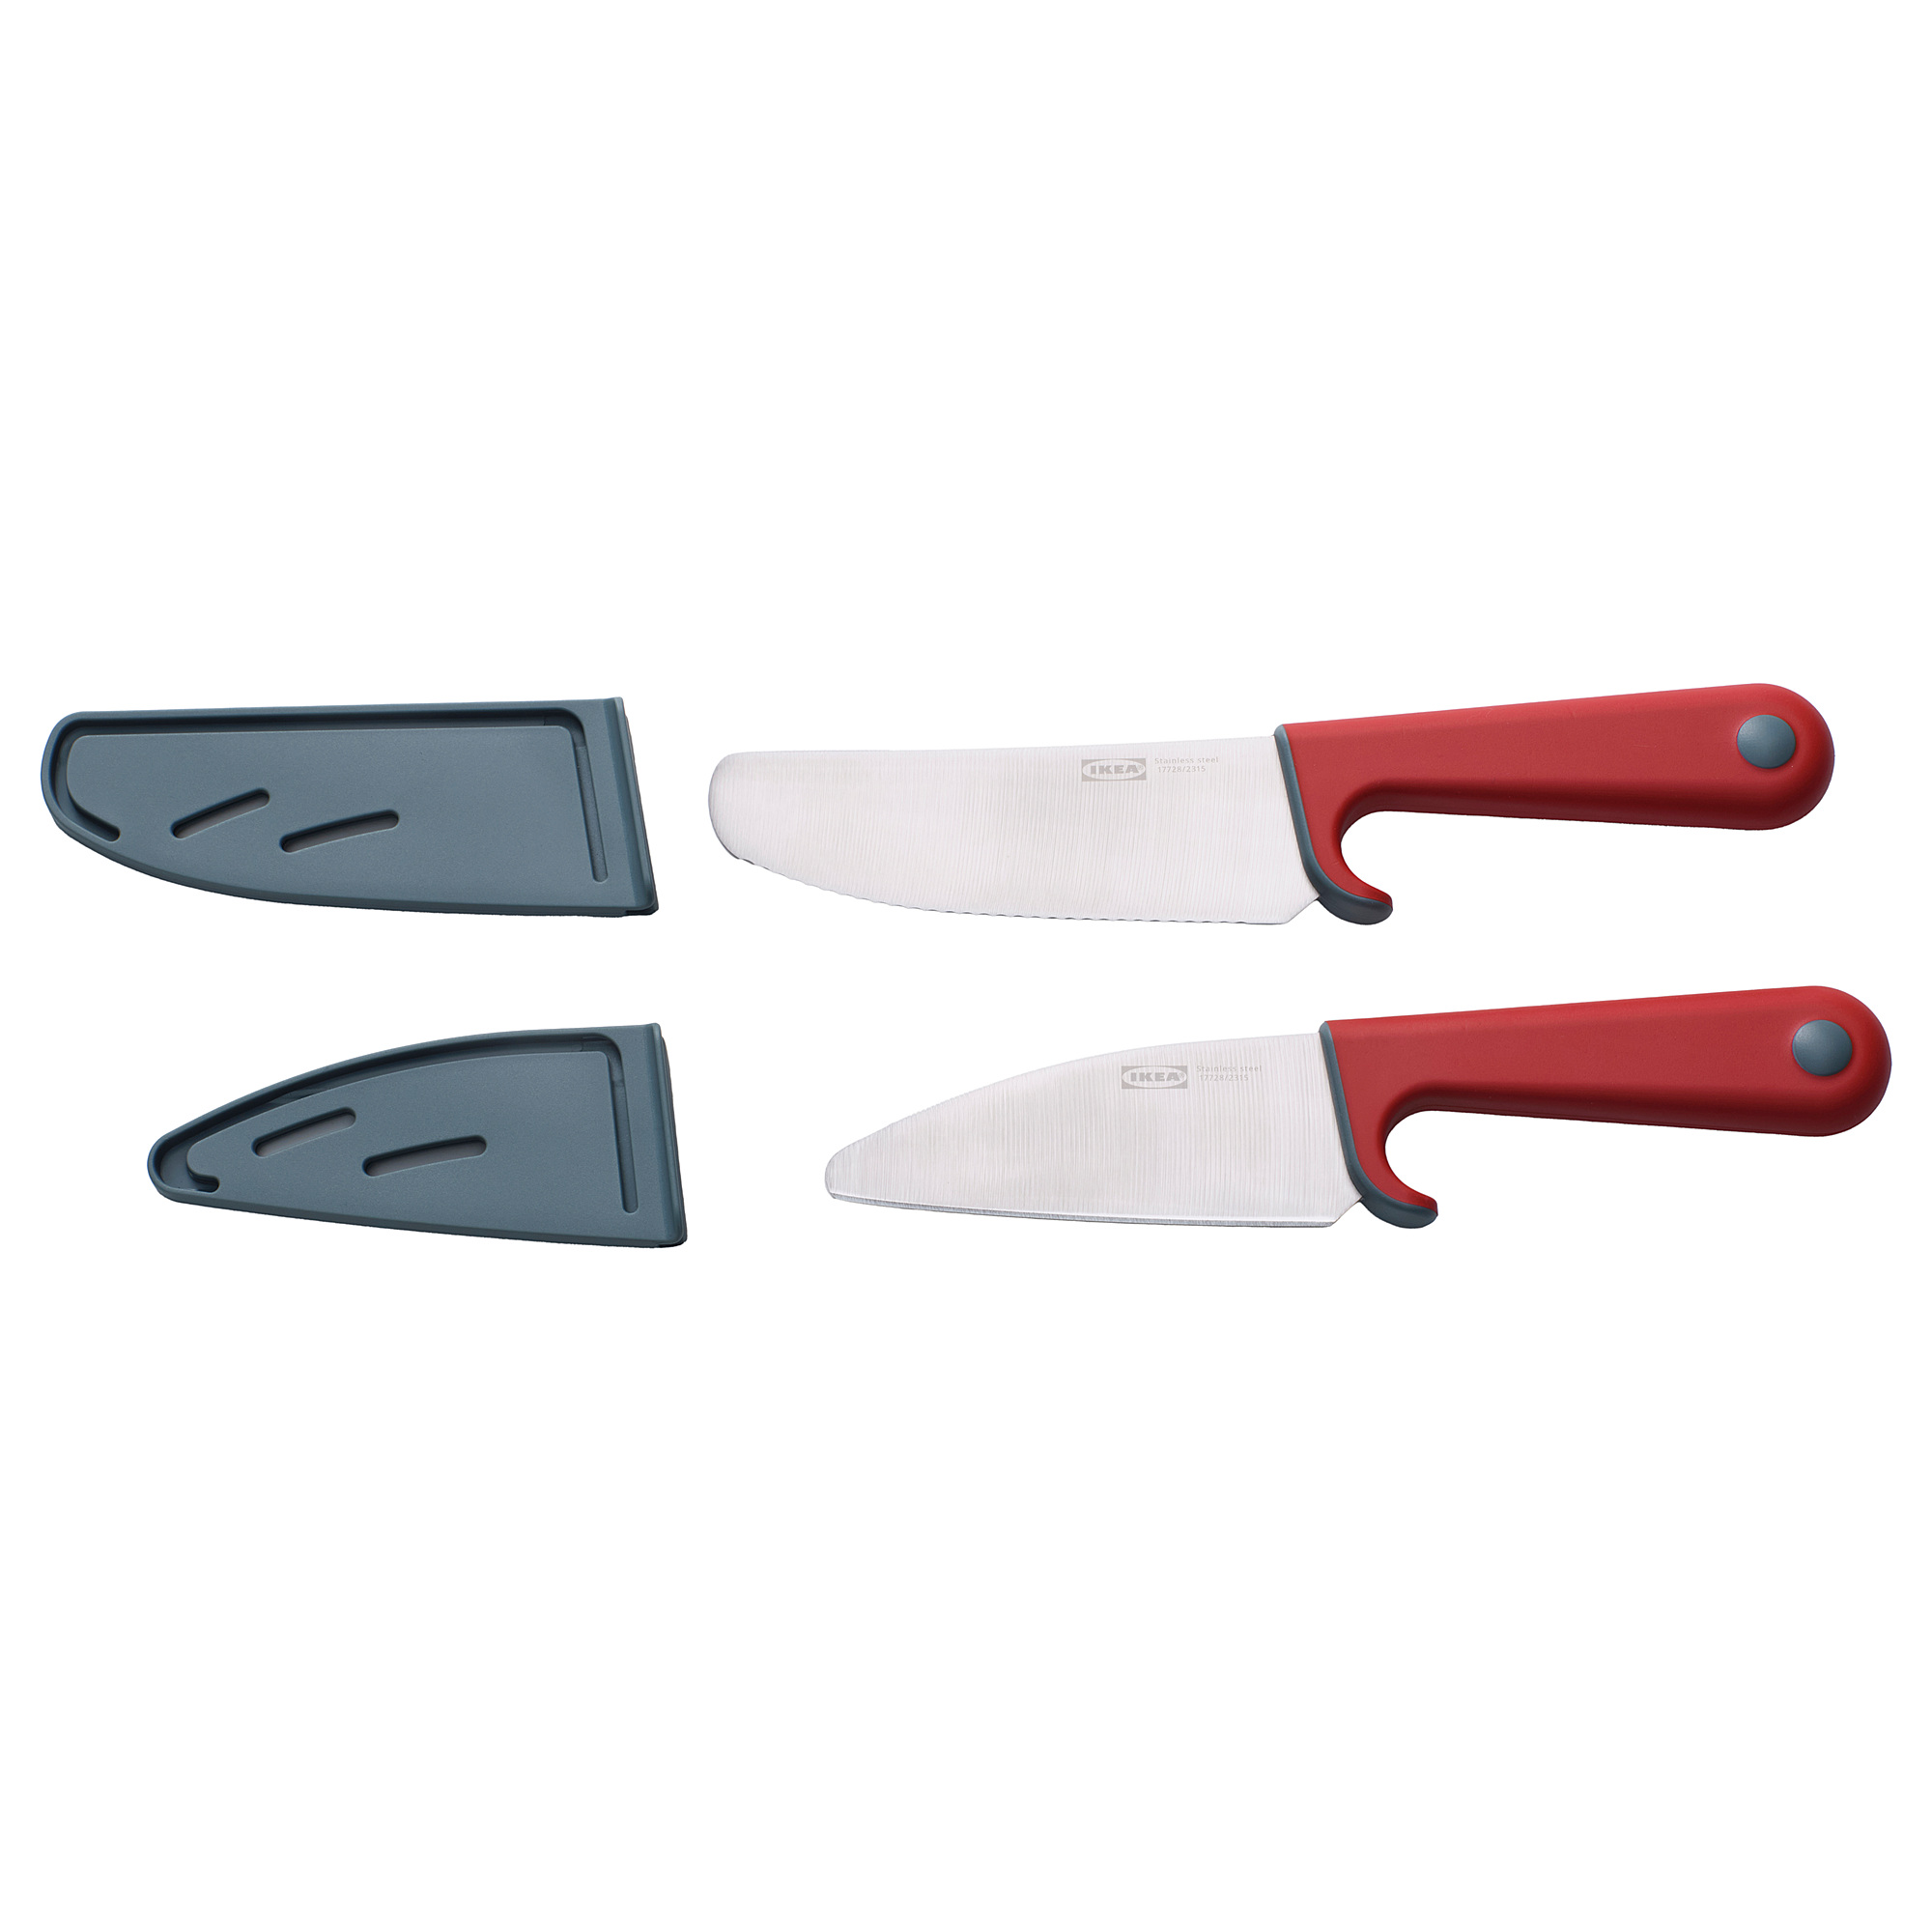 SMÅBIT 2-piece knife set